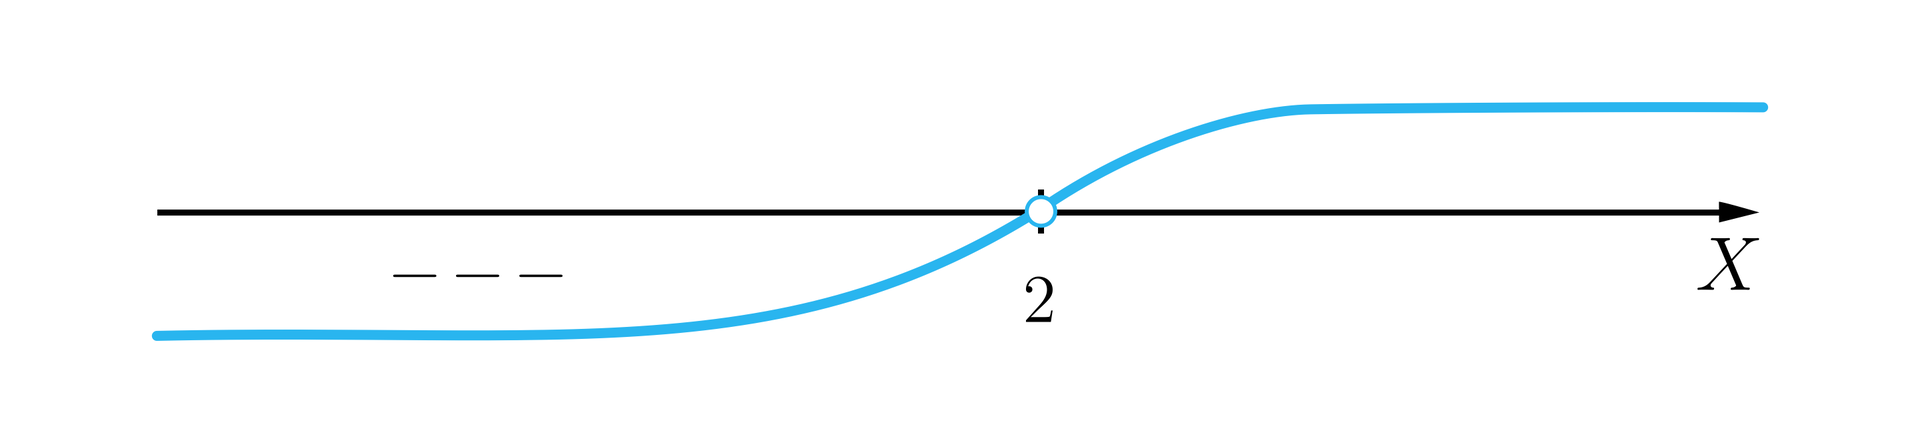 Rysunek przedstawia poziomą oś X z zaznaczoną na niej cyfrą 2. Cyfrę zaznaczono niezamalowanym kółkiem. Na ilustracji poprowadzono wykres wielomianu tak, że od minus nieskończoności do mdwóch wykres znajduje się pod osią, co oznaczono minusami znajdującymi się między osią a wykresem. Od dwójki do plus nieskończoności wykres przebiega nad osią.